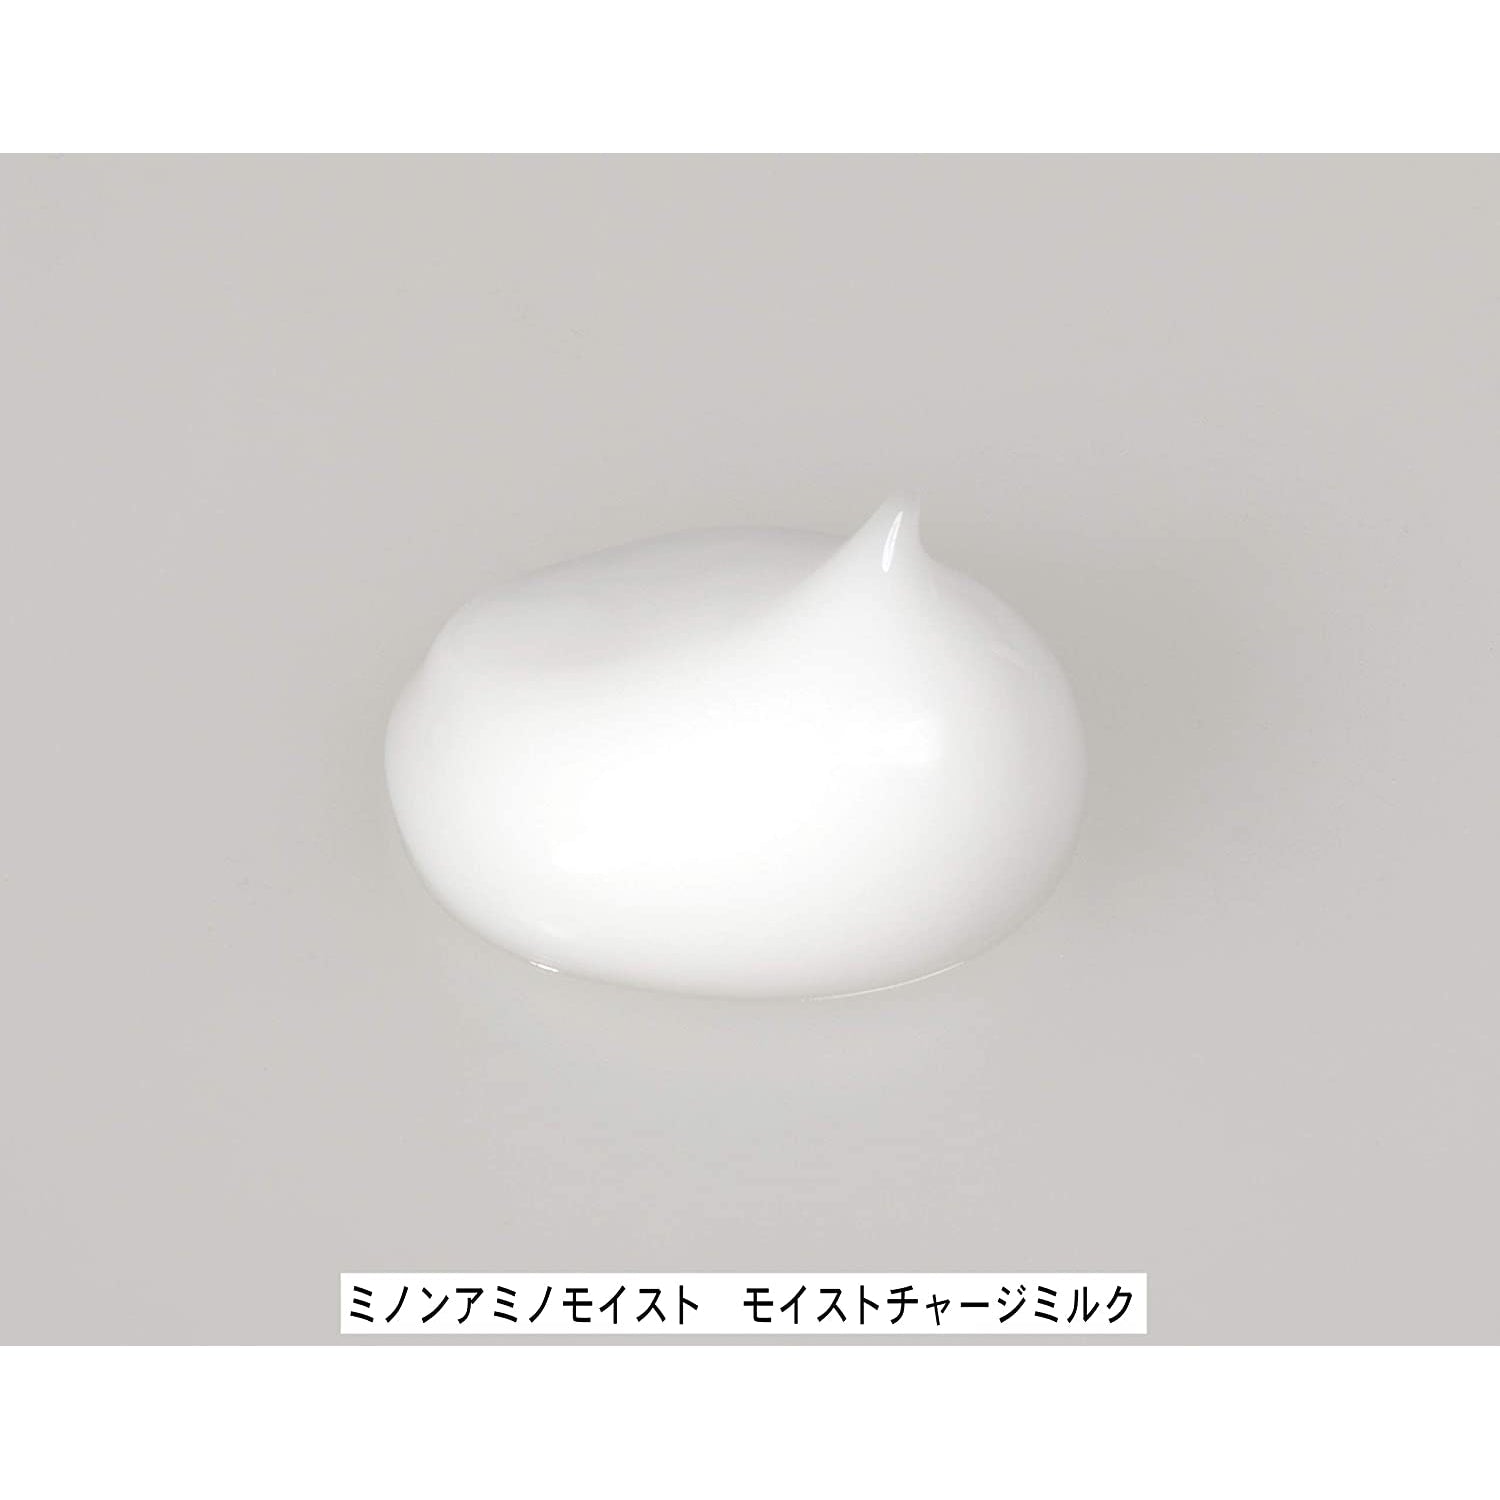 Minon Amino Moist Charge Milk Sensitive Skin Moisturizer 100g